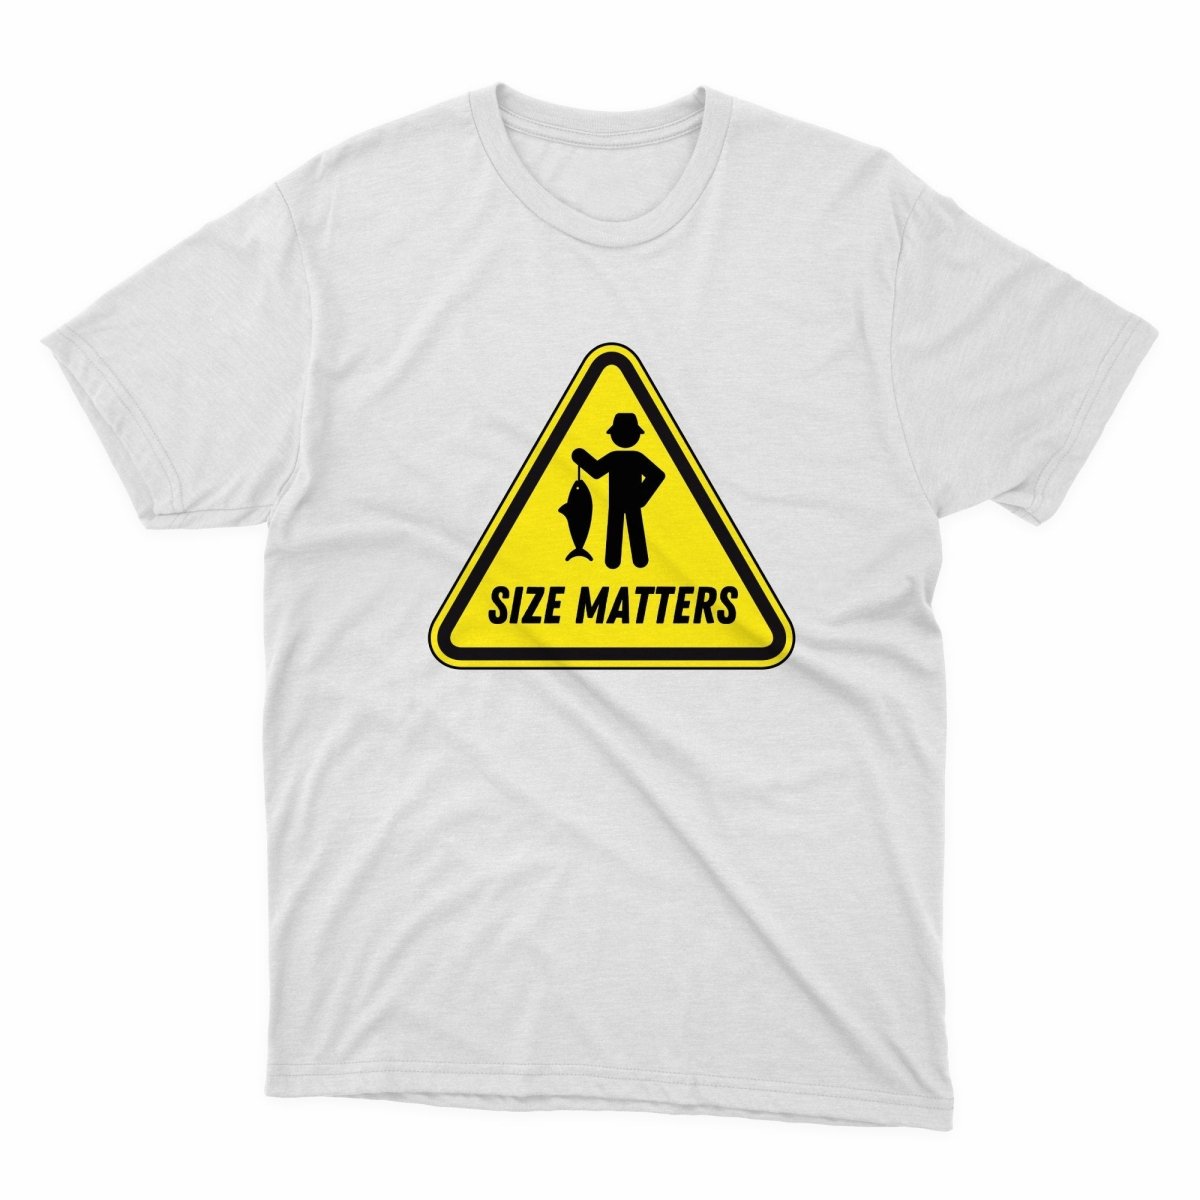 Size Matters Shirt - stickerbullSize Matters ShirtShirtsPrintifystickerbull78197786533712621156WhiteSa white t - shirt with a yellow and black sign saying size matters